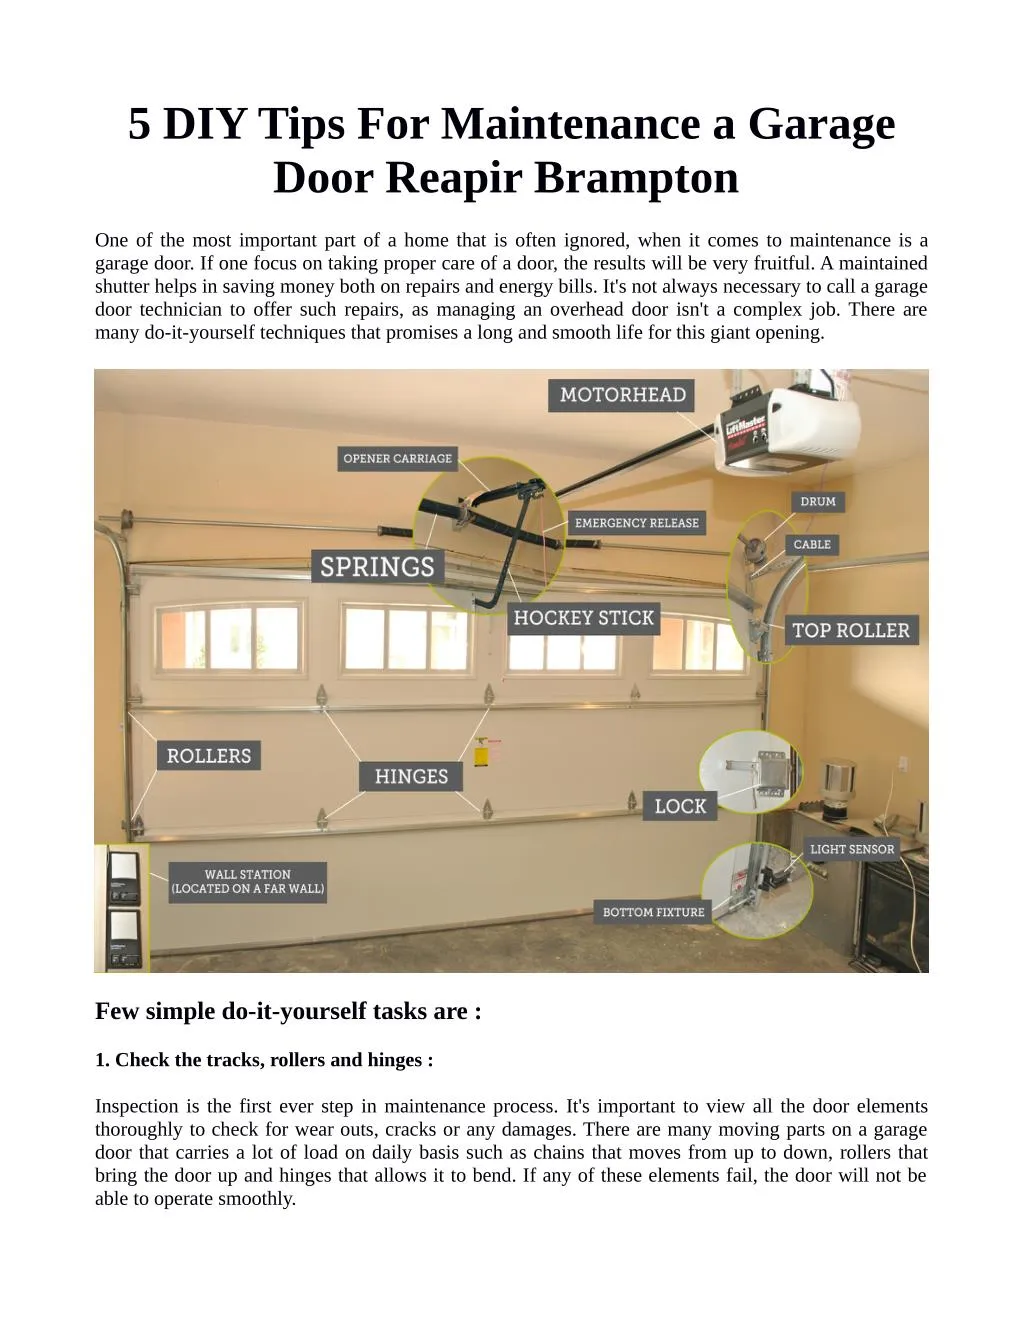 5 diy tips for maintenance a garage door reapir